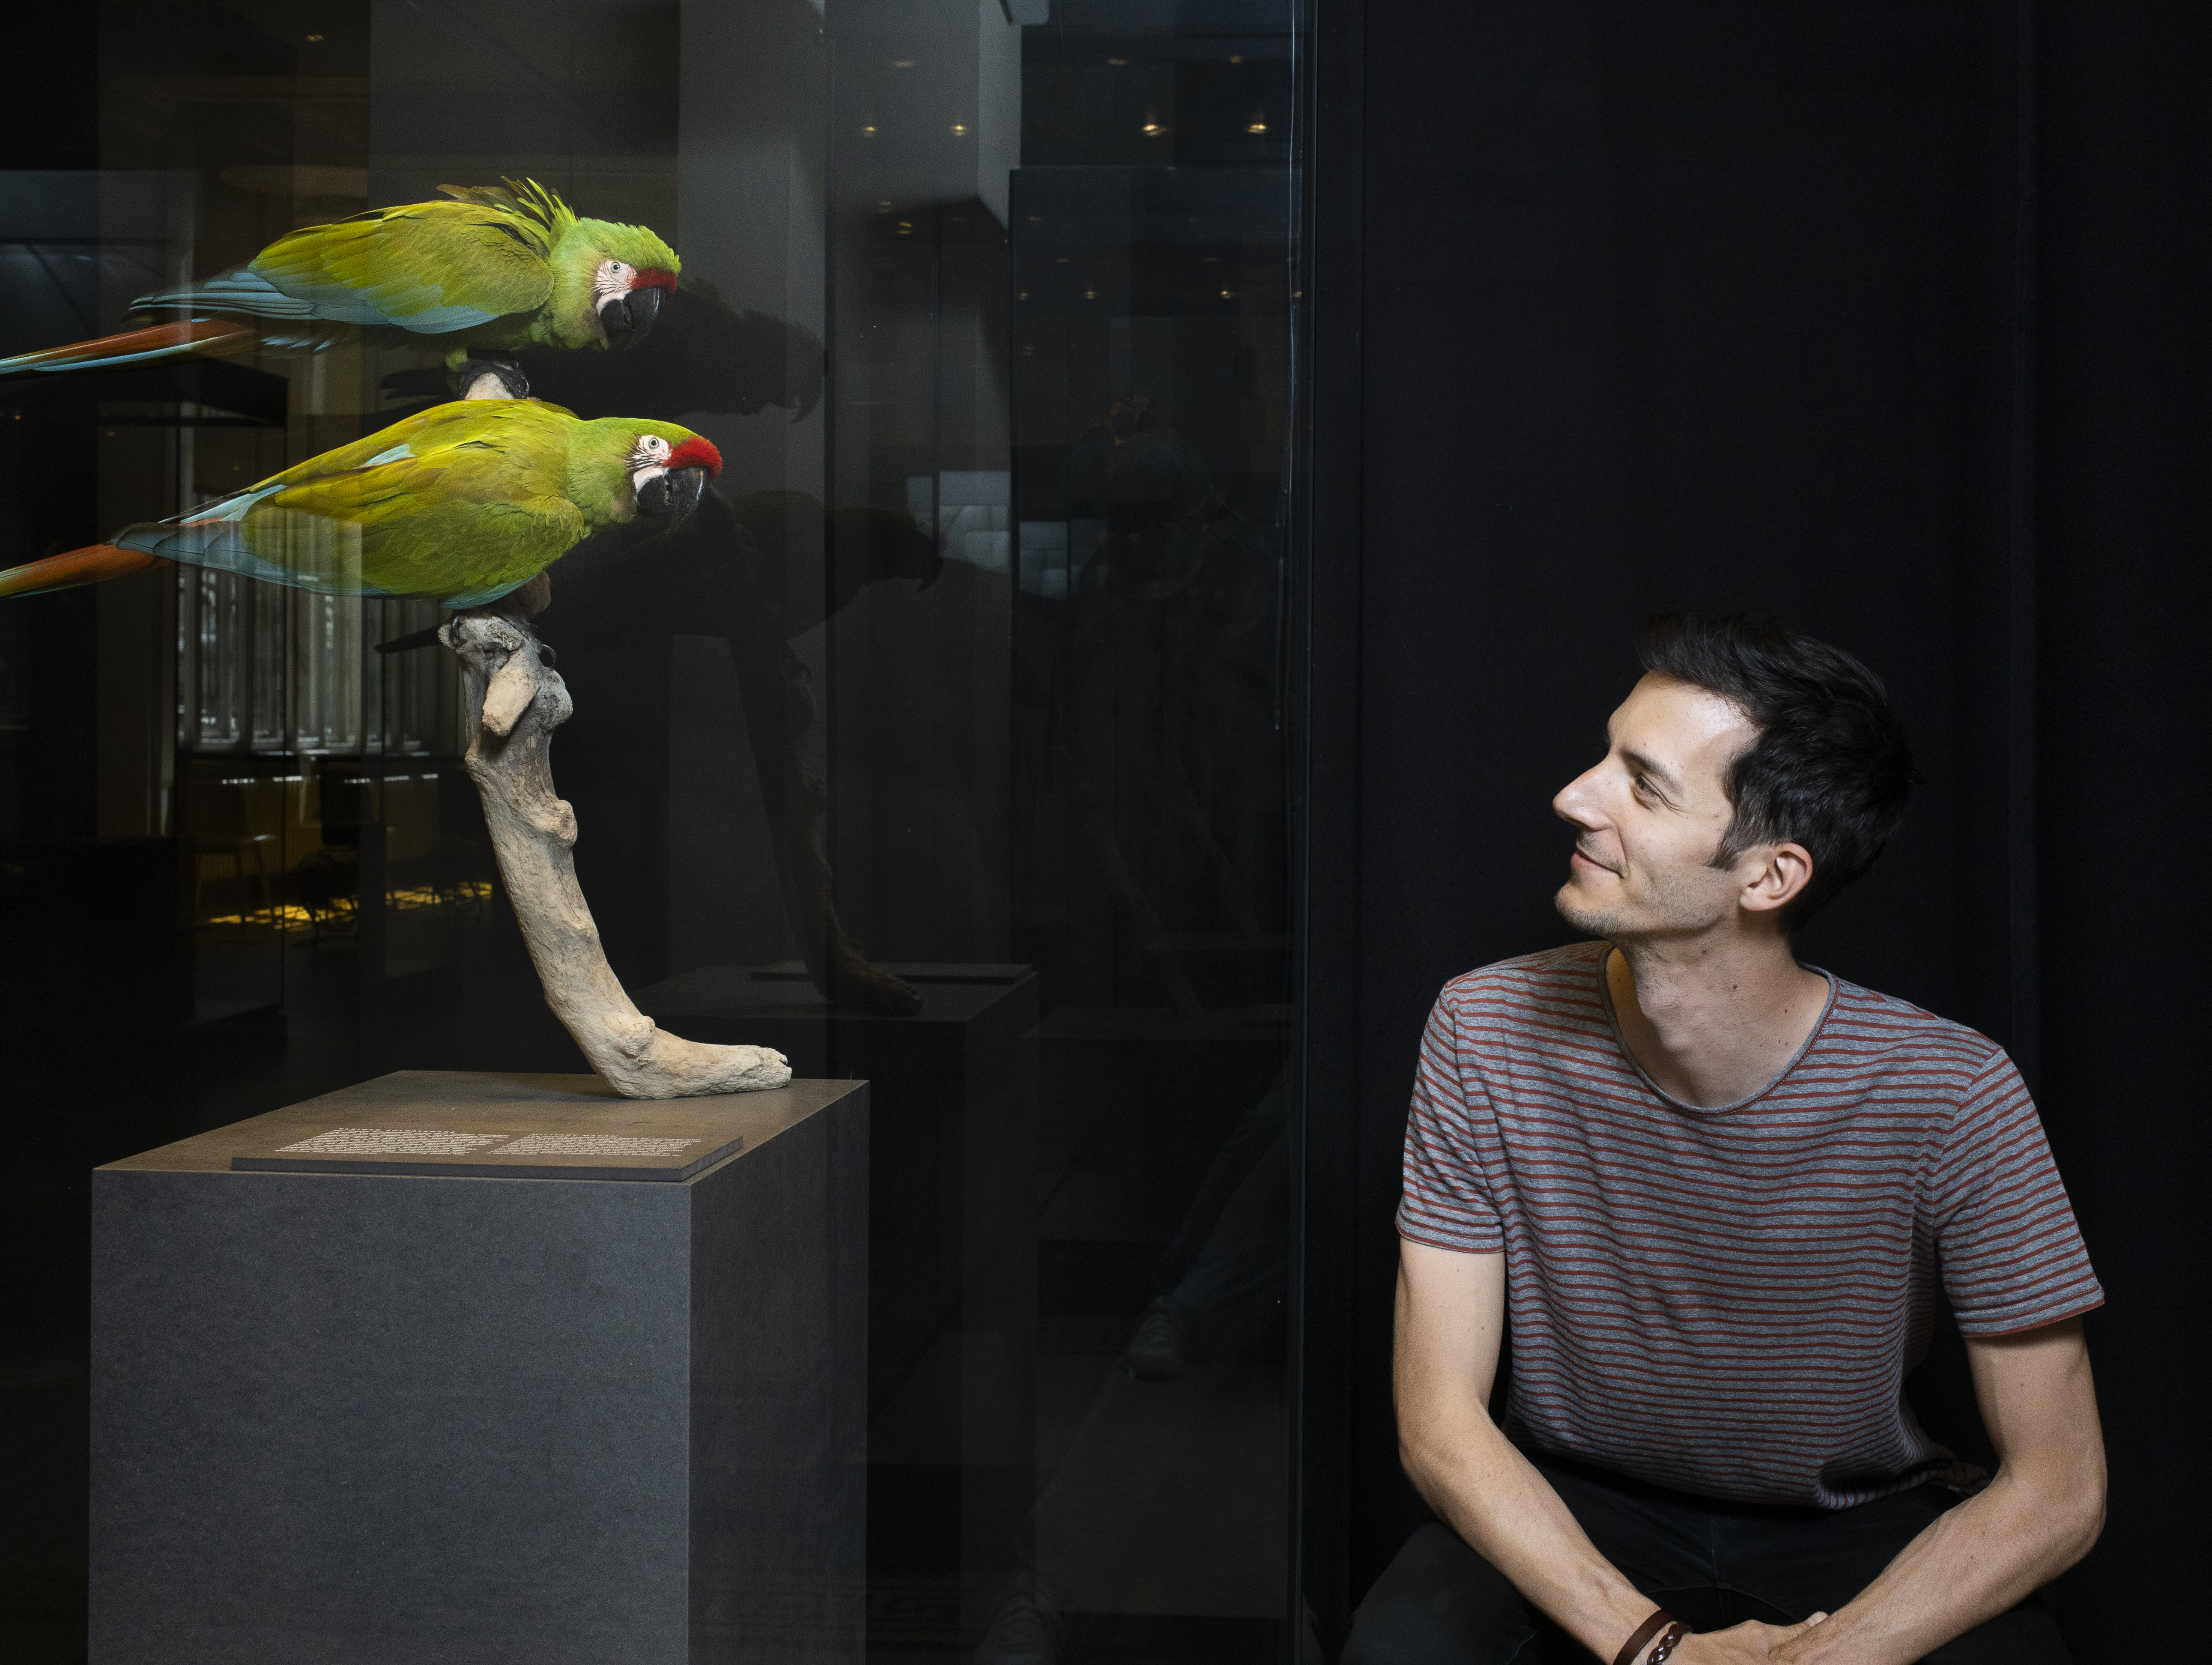 Bruno Delepelaire (rechts im Bild) neben zwei grünen Papageien (links im Bild).